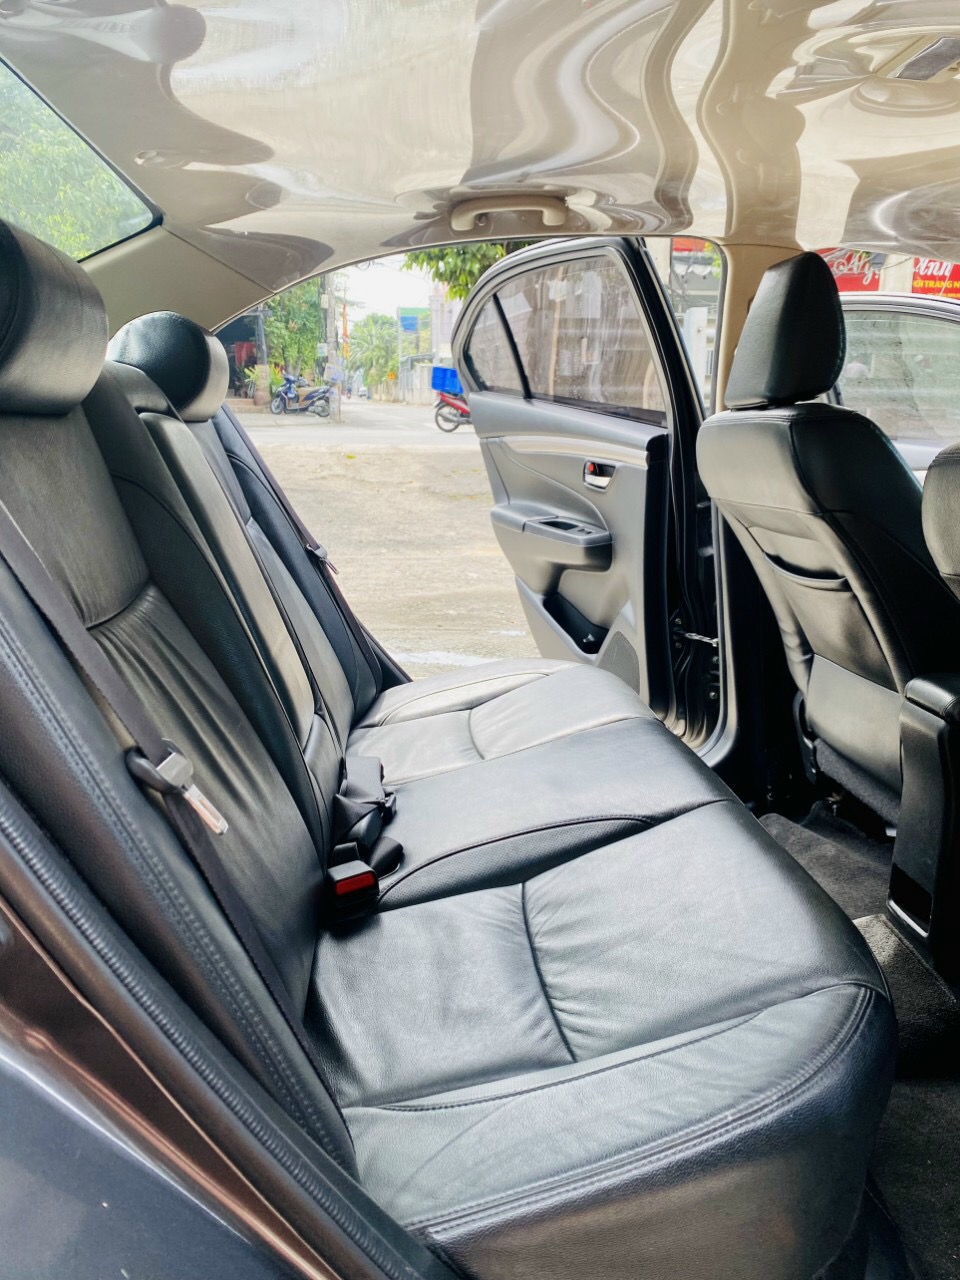 Cần bán gấp Suzuki Ciaz đời 2019, màu xám, xe nhập, số tự động, giá 395tr